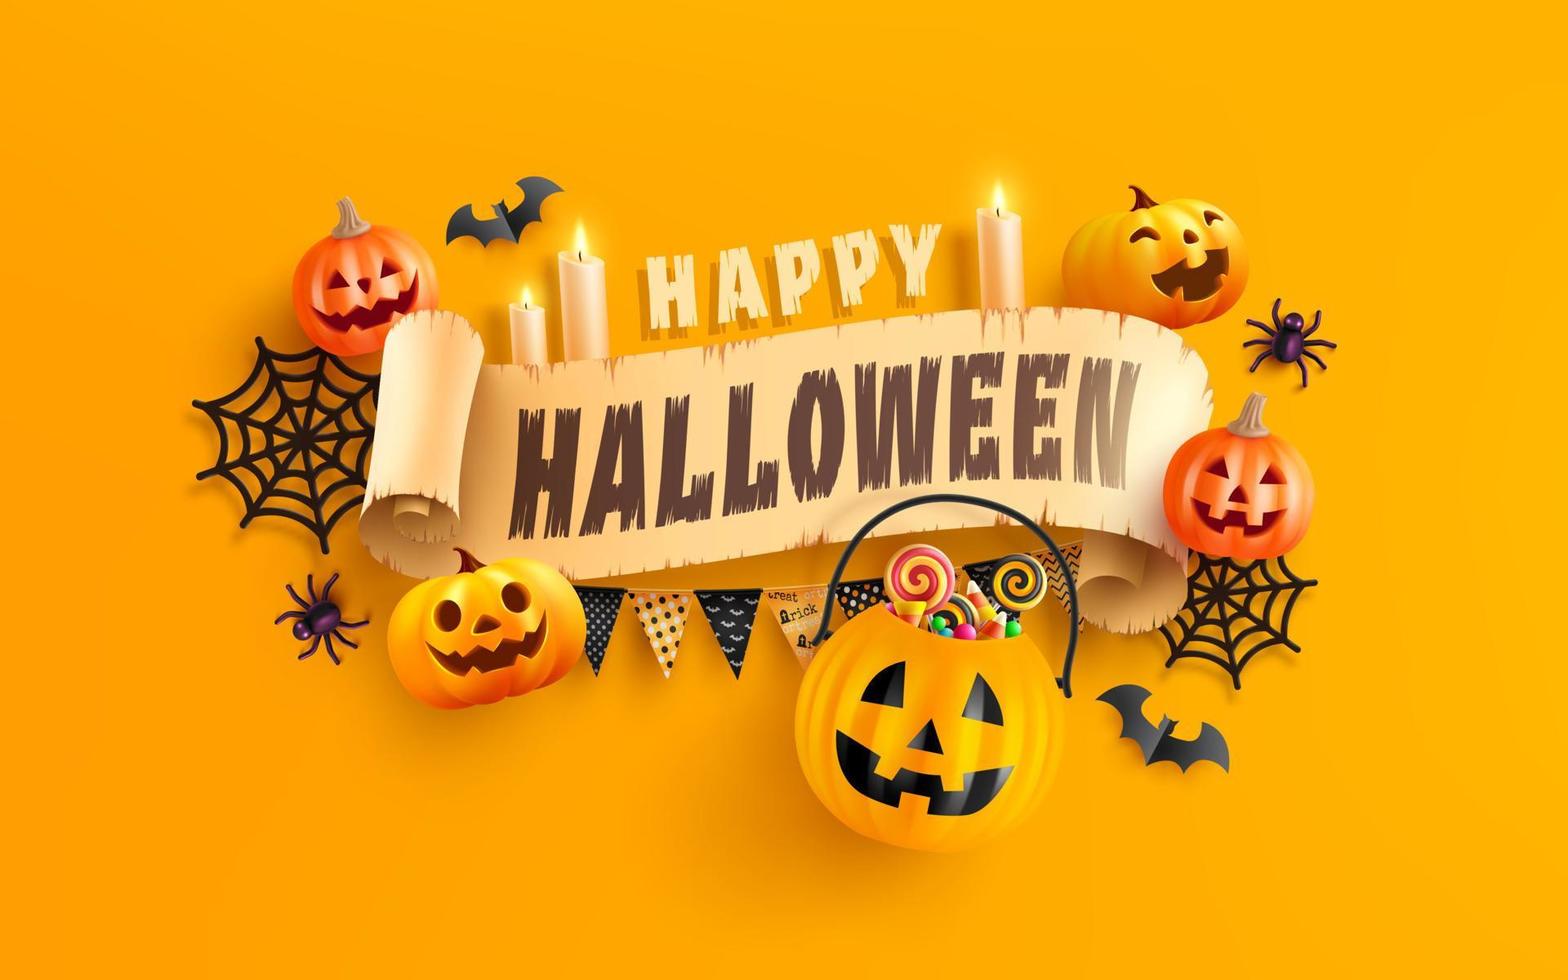 Banner de festa de halloween com cara de abóbora assustadora vermelha  isolada em png ou espaço de fundo branco transparente para modelo de venda  de texto ilustração em vetor cartaz